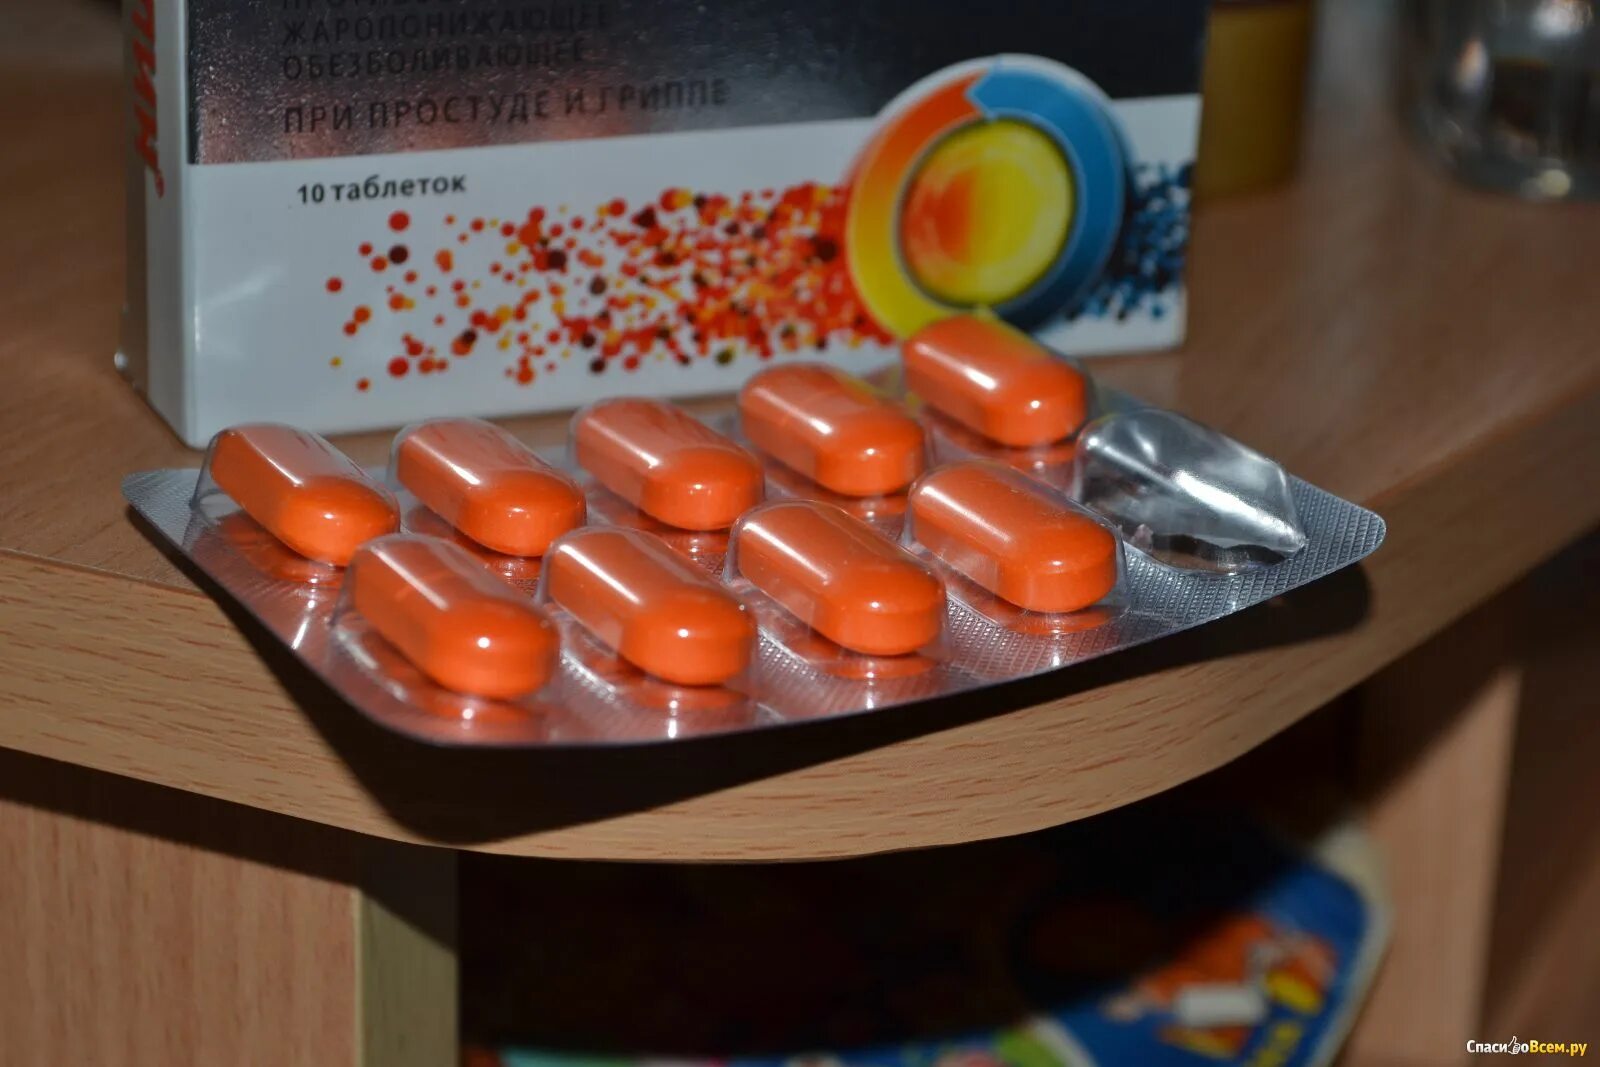 Ибуклин оранжевые капсулы. Ибупрофен оранжевые таблетки. Таблетки от головной боли. Оранжевая таблетка обезболивающее.